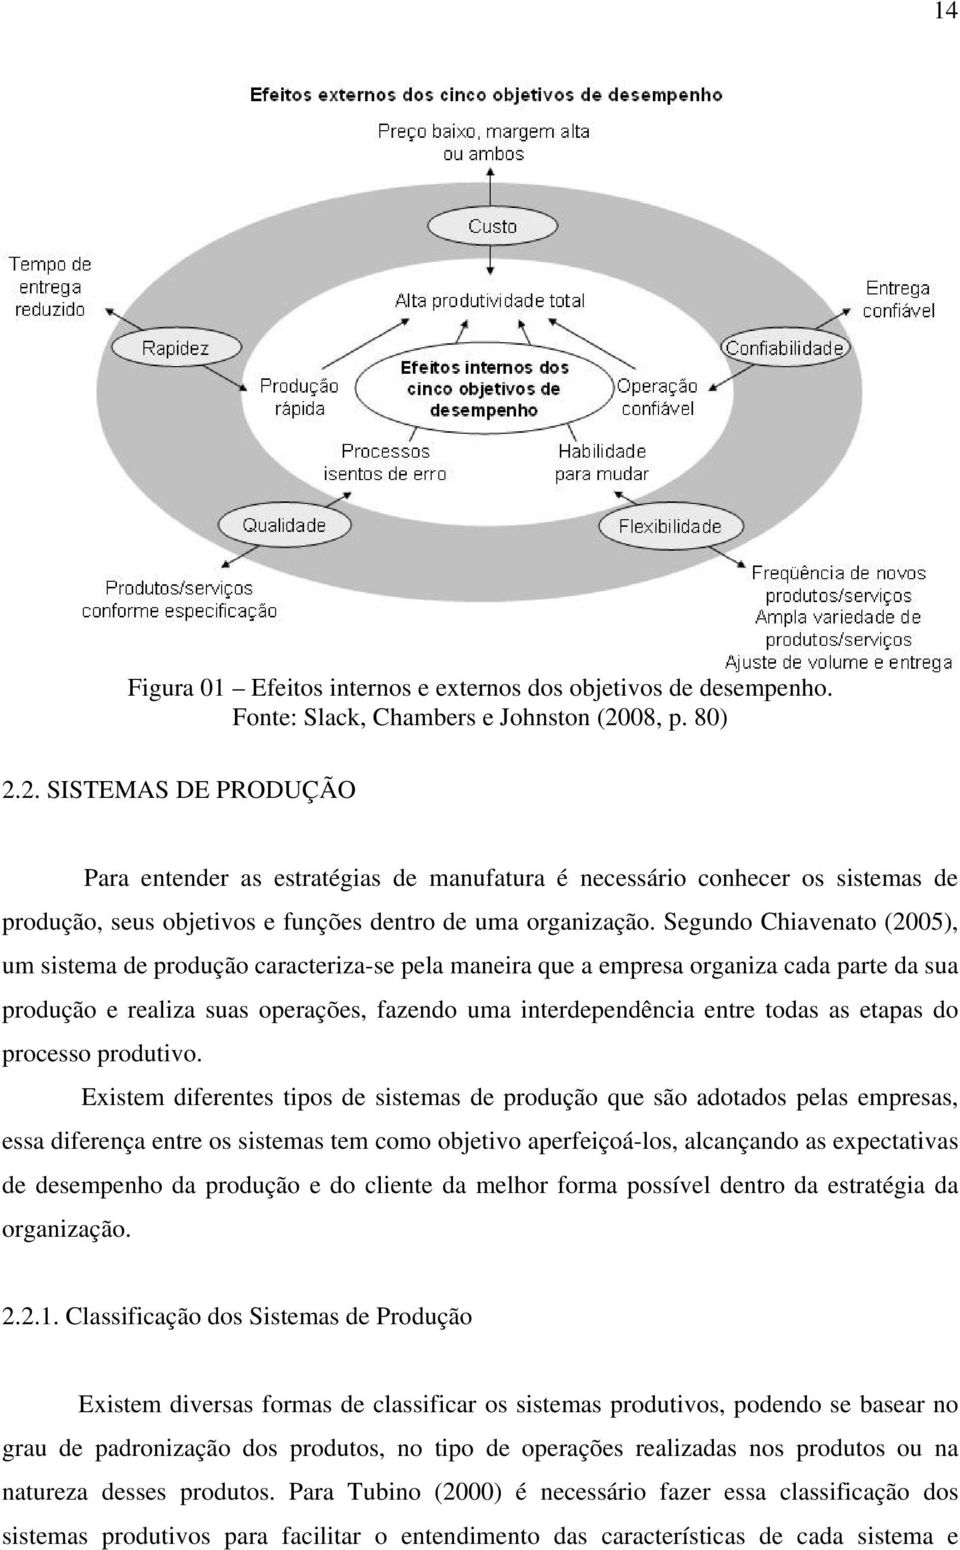 Segundo Chiavenato (2005), um sistema de produção caracteriza-se pela maneira que a empresa organiza cada parte da sua produção e realiza suas operações, fazendo uma interdependência entre todas as